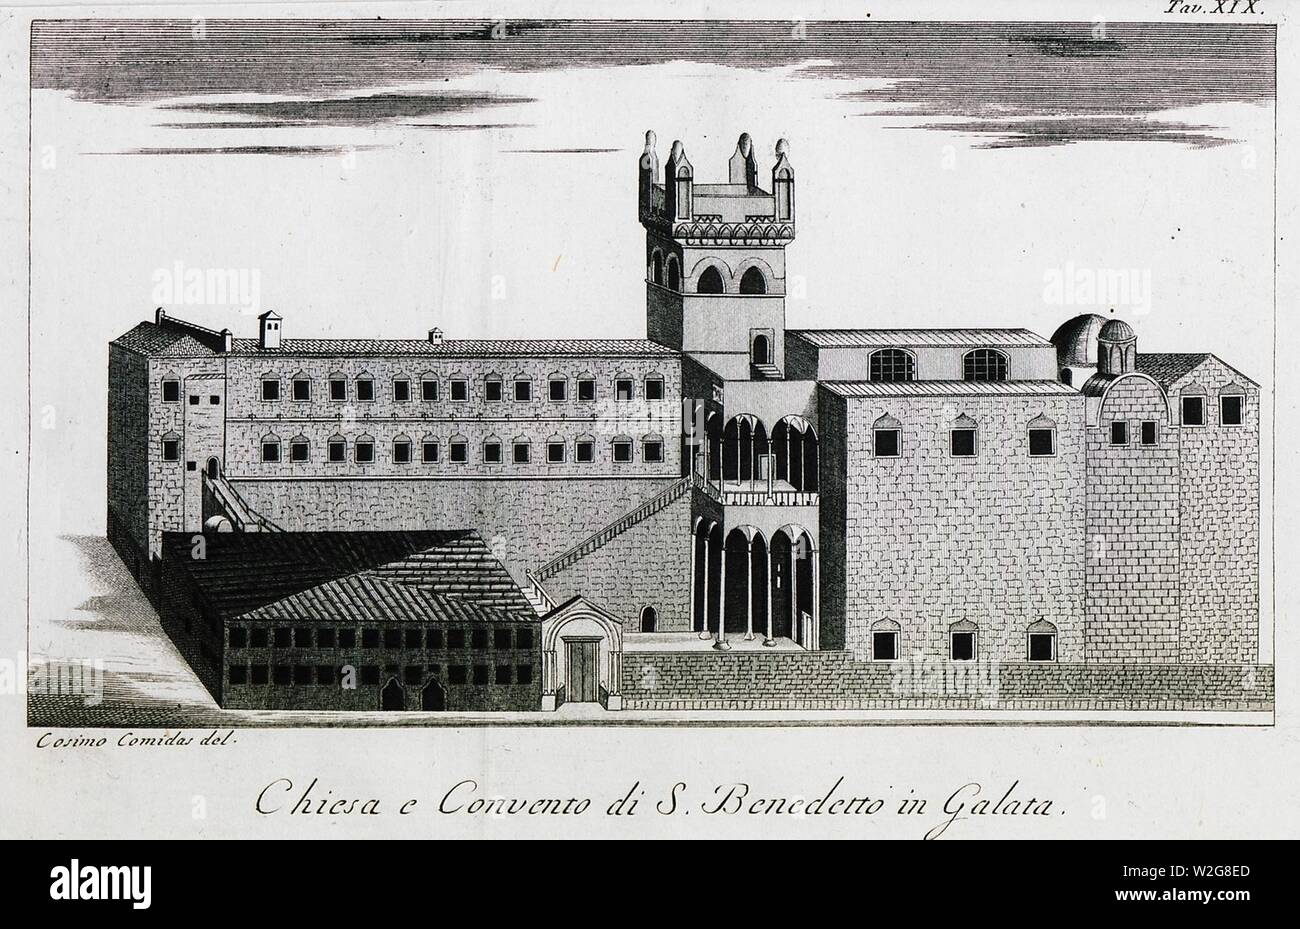 Chiesa e convento di S Benedetto in Galata - Comidas Cosimo - 1794. Stock Photo